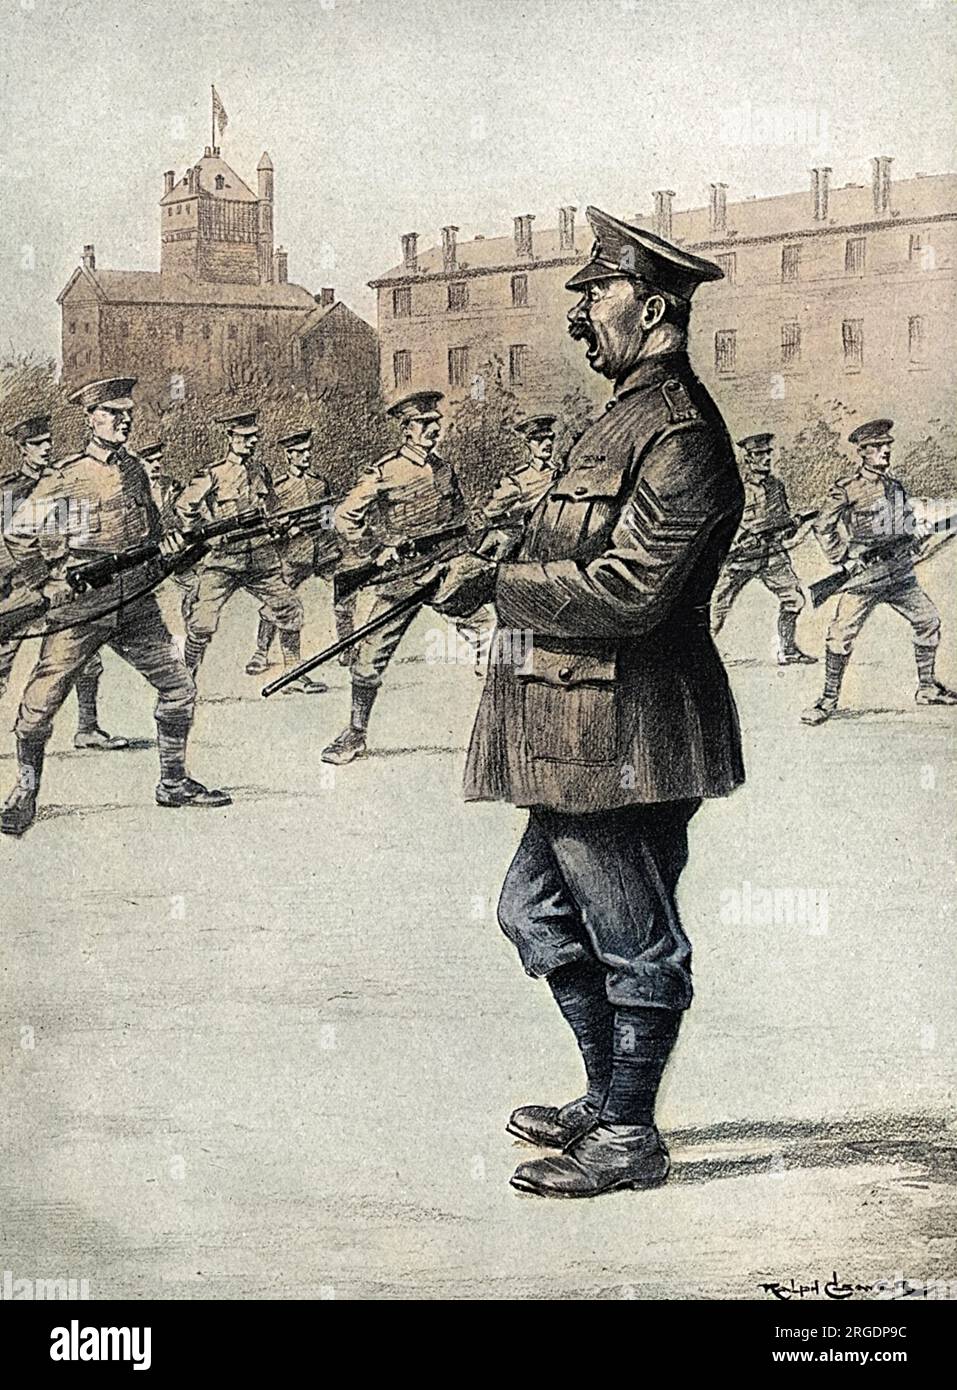 Une illustration montrant un sergent enseignant à ses soldats comment poignarder quelqu'un avec une baïonnette pour maximiser l'effet du coup de couteau en tordant la baïonnette, en préparation pour combattre dans la première Guerre mondiale. Banque D'Images